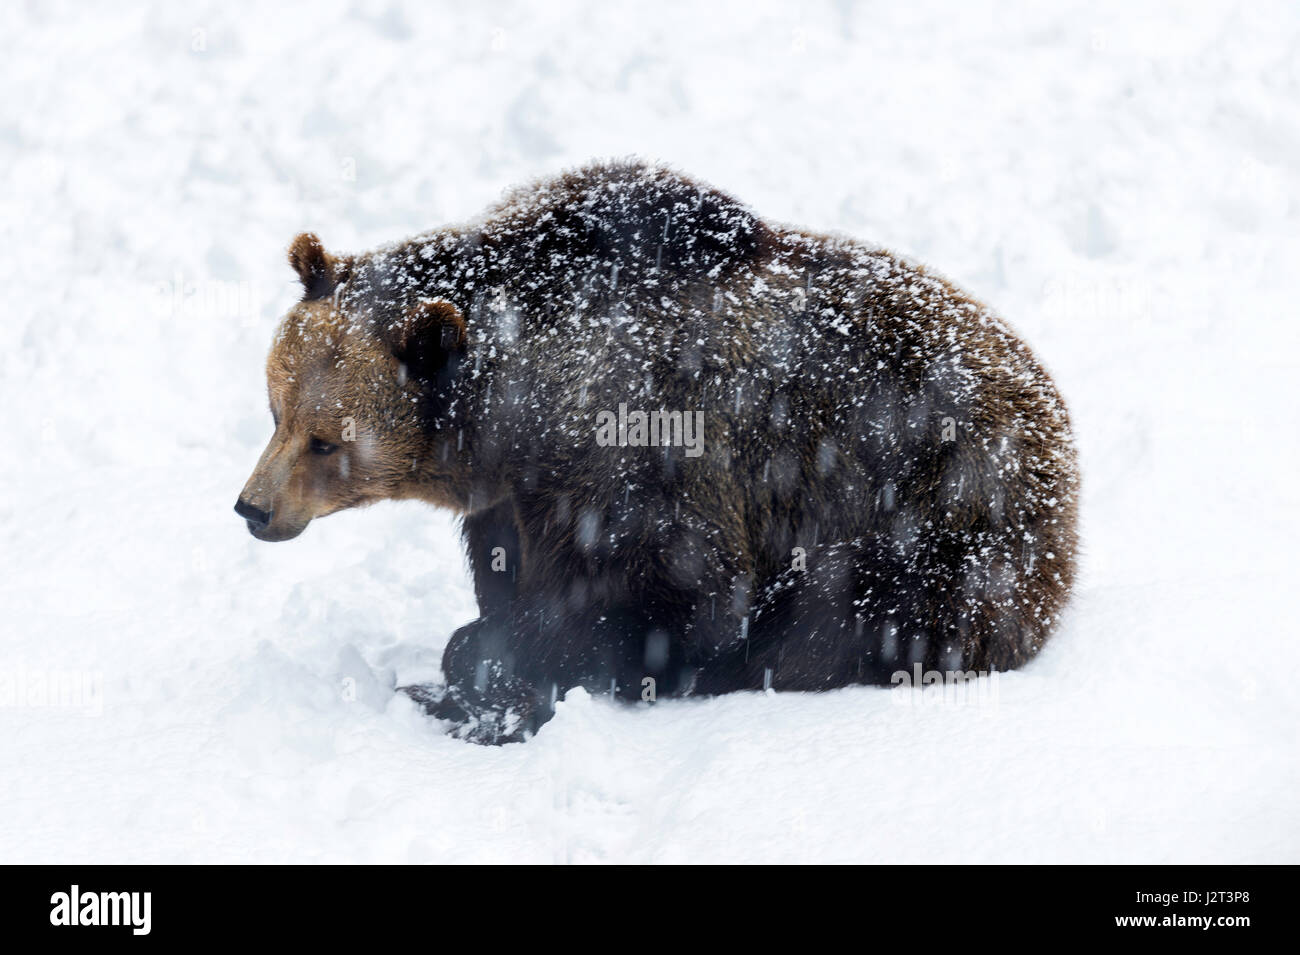 Solo para mujeres adultas Euroasiática de oso pardo (Ursus arctos) representado sentado en una tormenta de nieve en invierno. Foto de stock